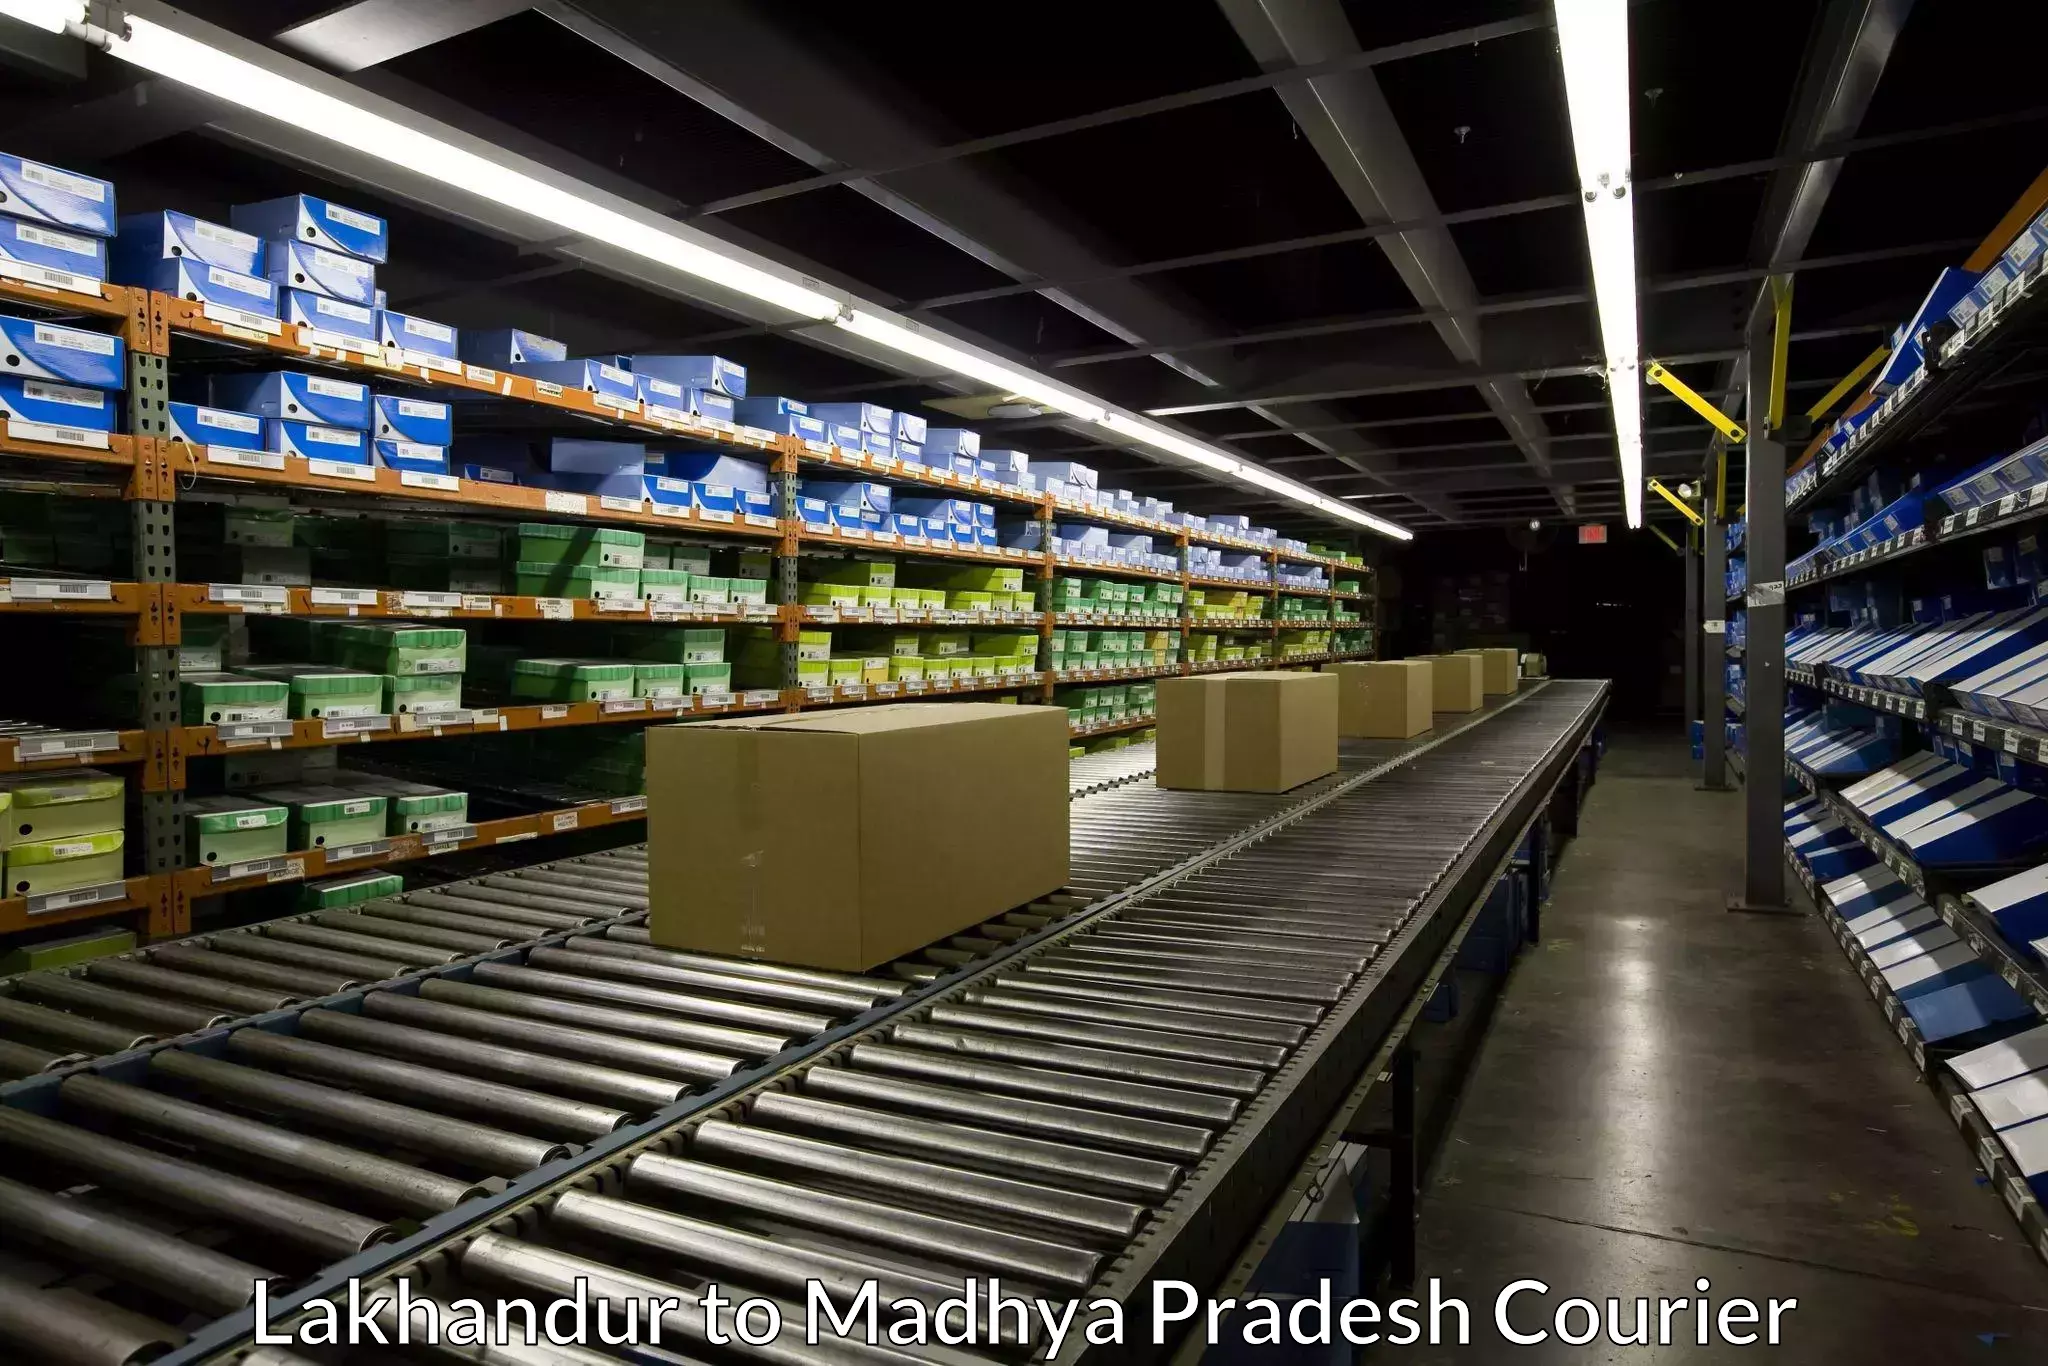 Smart logistics strategies Lakhandur to Madhya Pradesh